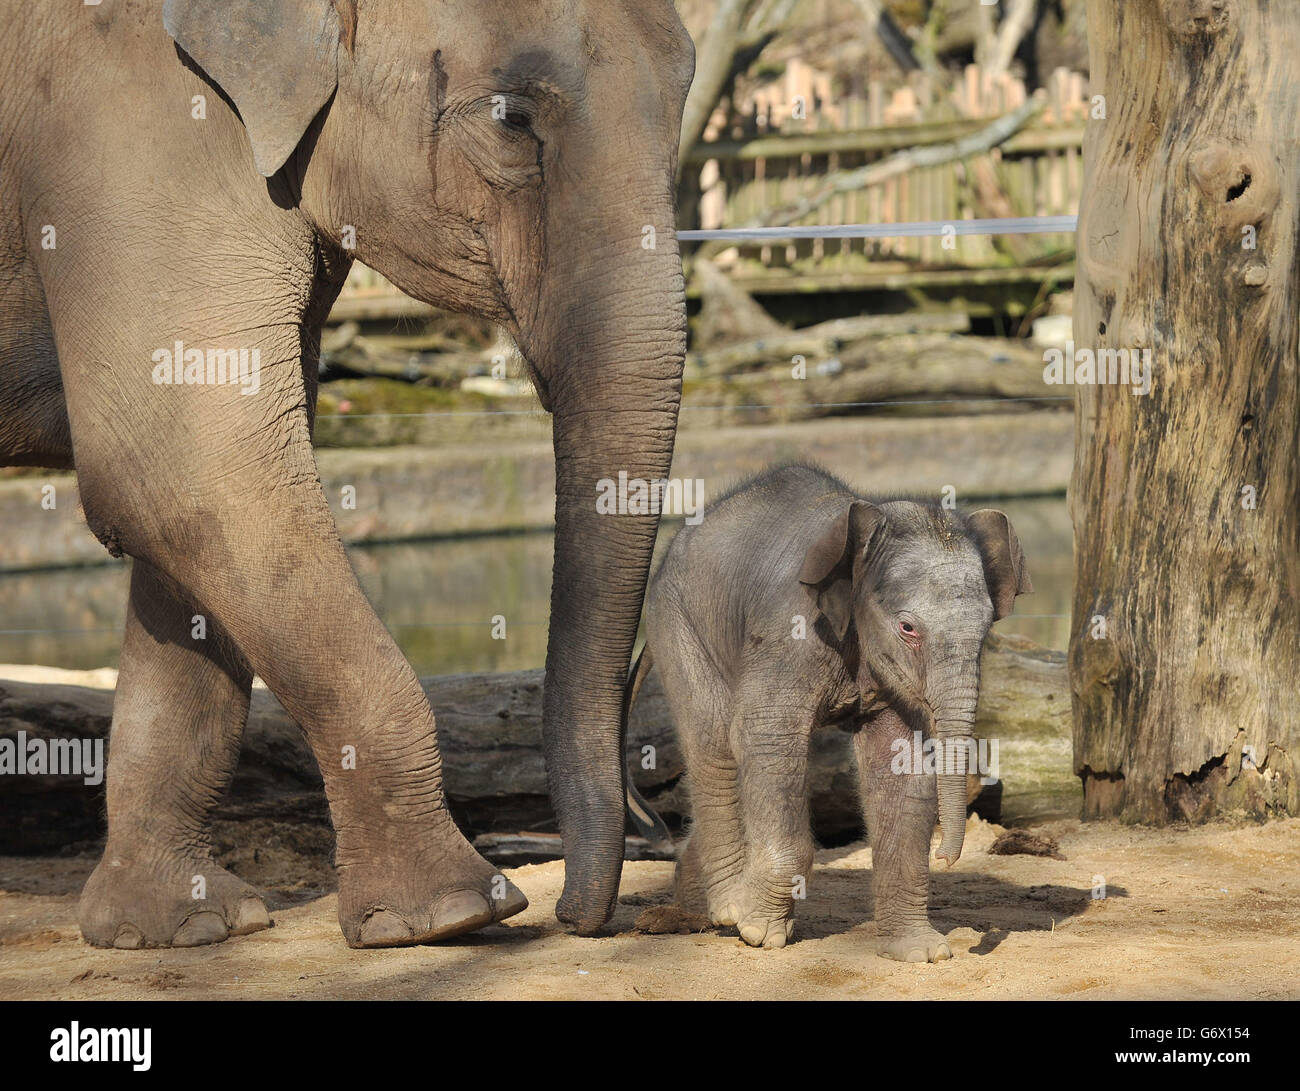 Un polpaccio indiano senza nome nel suo recinto allo zoo di Twycross, Warwickshire, nato nelle prime ore del martedì 4 marzo a 18 anni Noorjahan, una mandria di quattro elefanti indiani allo zoo, dopo una gravidanza di 22 mesi. Foto Stock